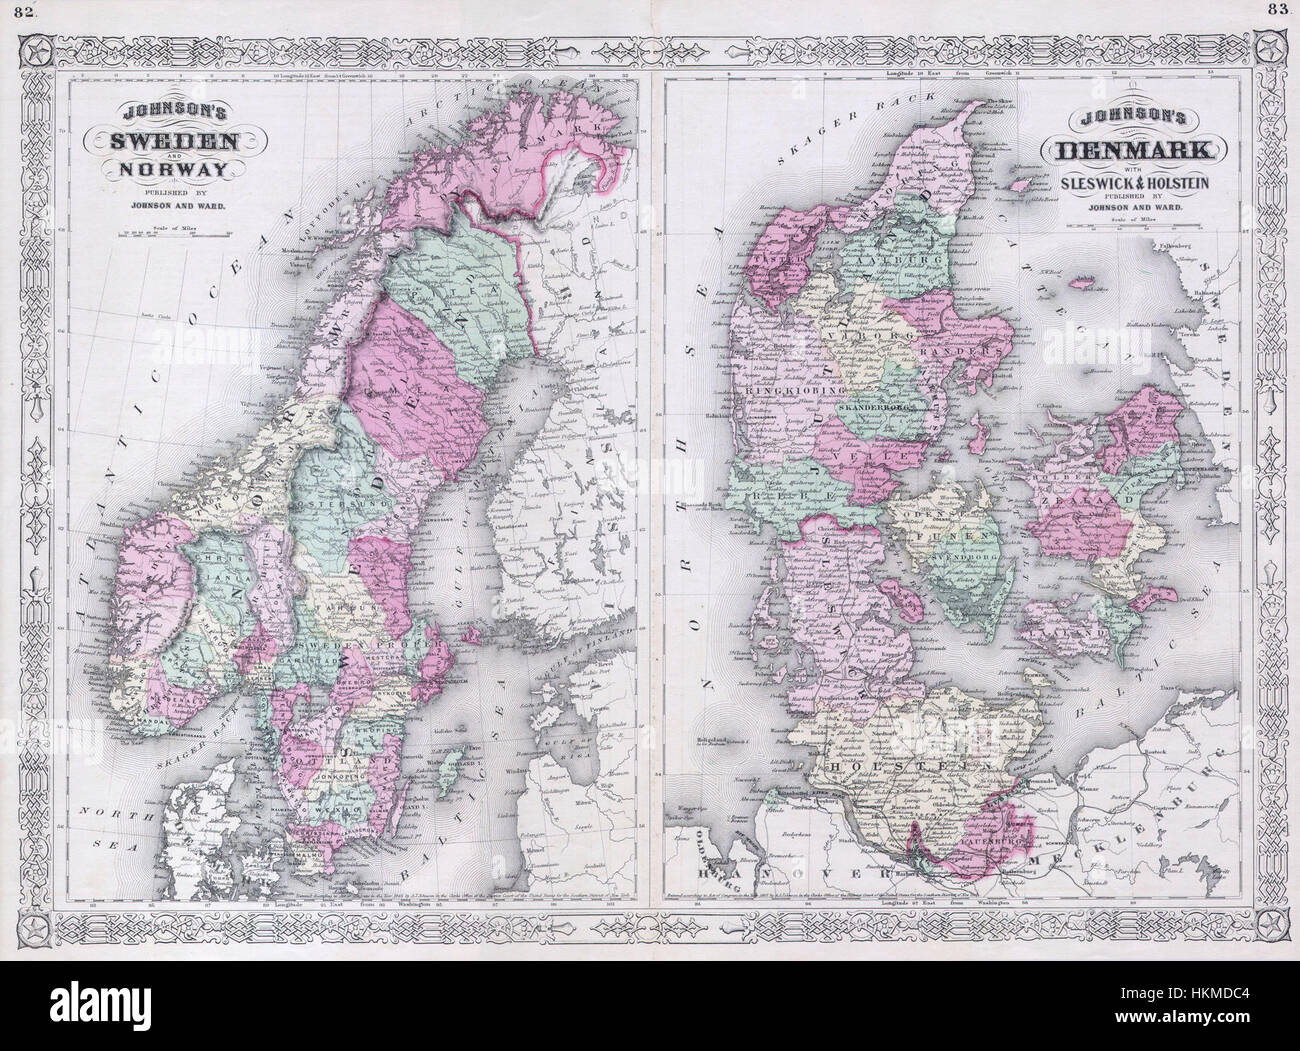 Södra Sverige karta SOUTHERN SWEDEN BAEDEKER 1899 old antique map plan chart 